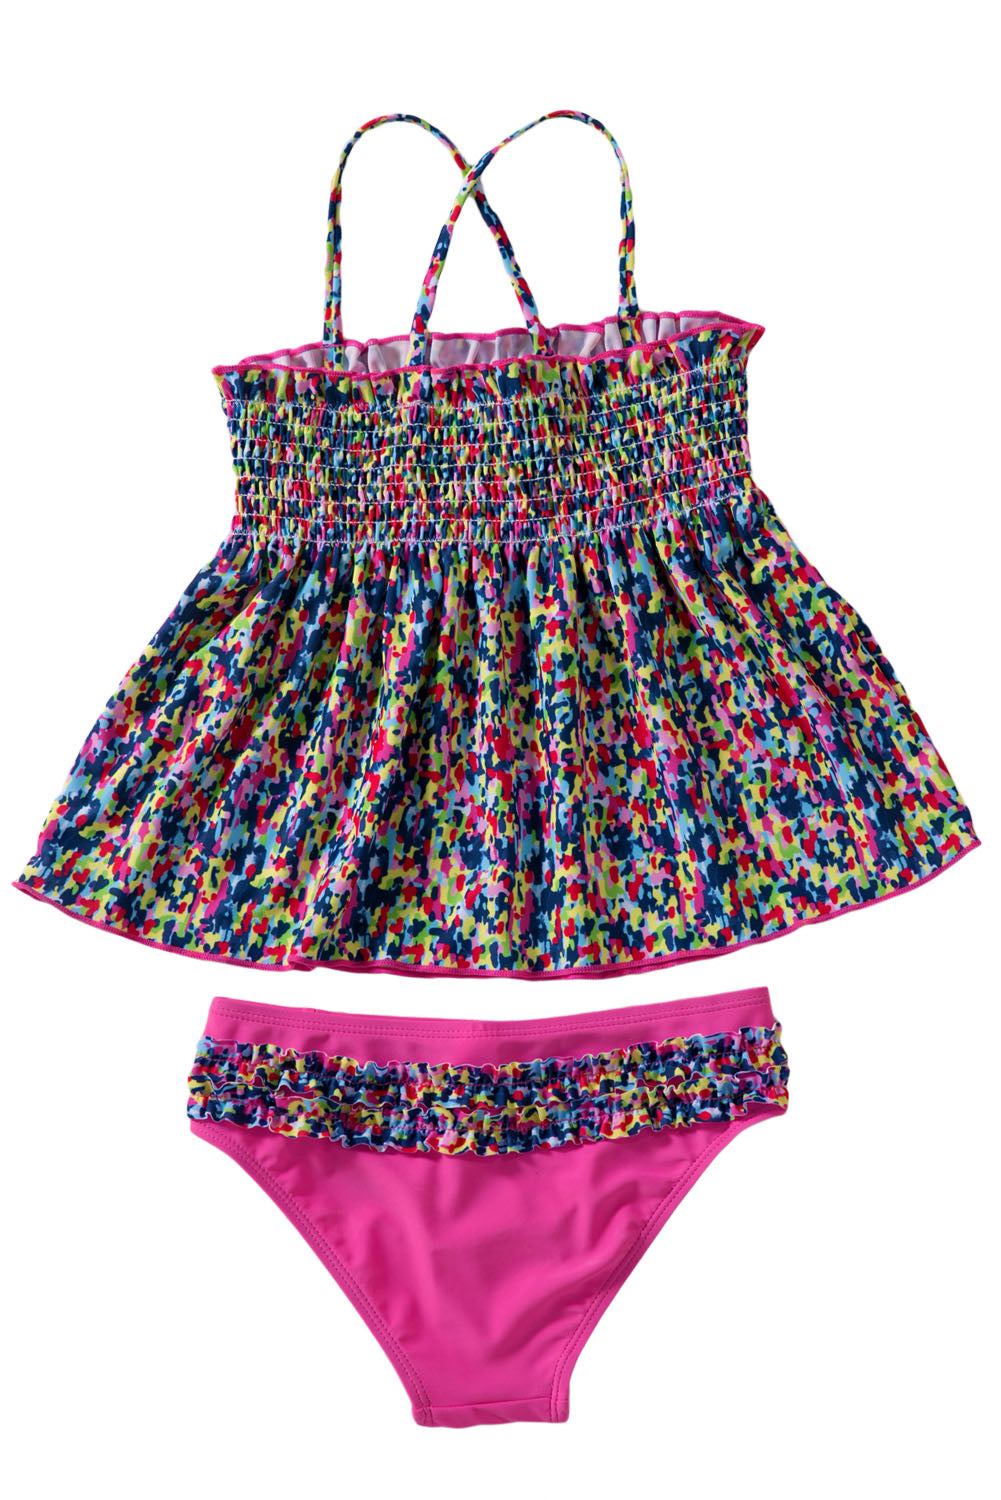 Little Girls’ Boho Two Piece Swimsuit Set